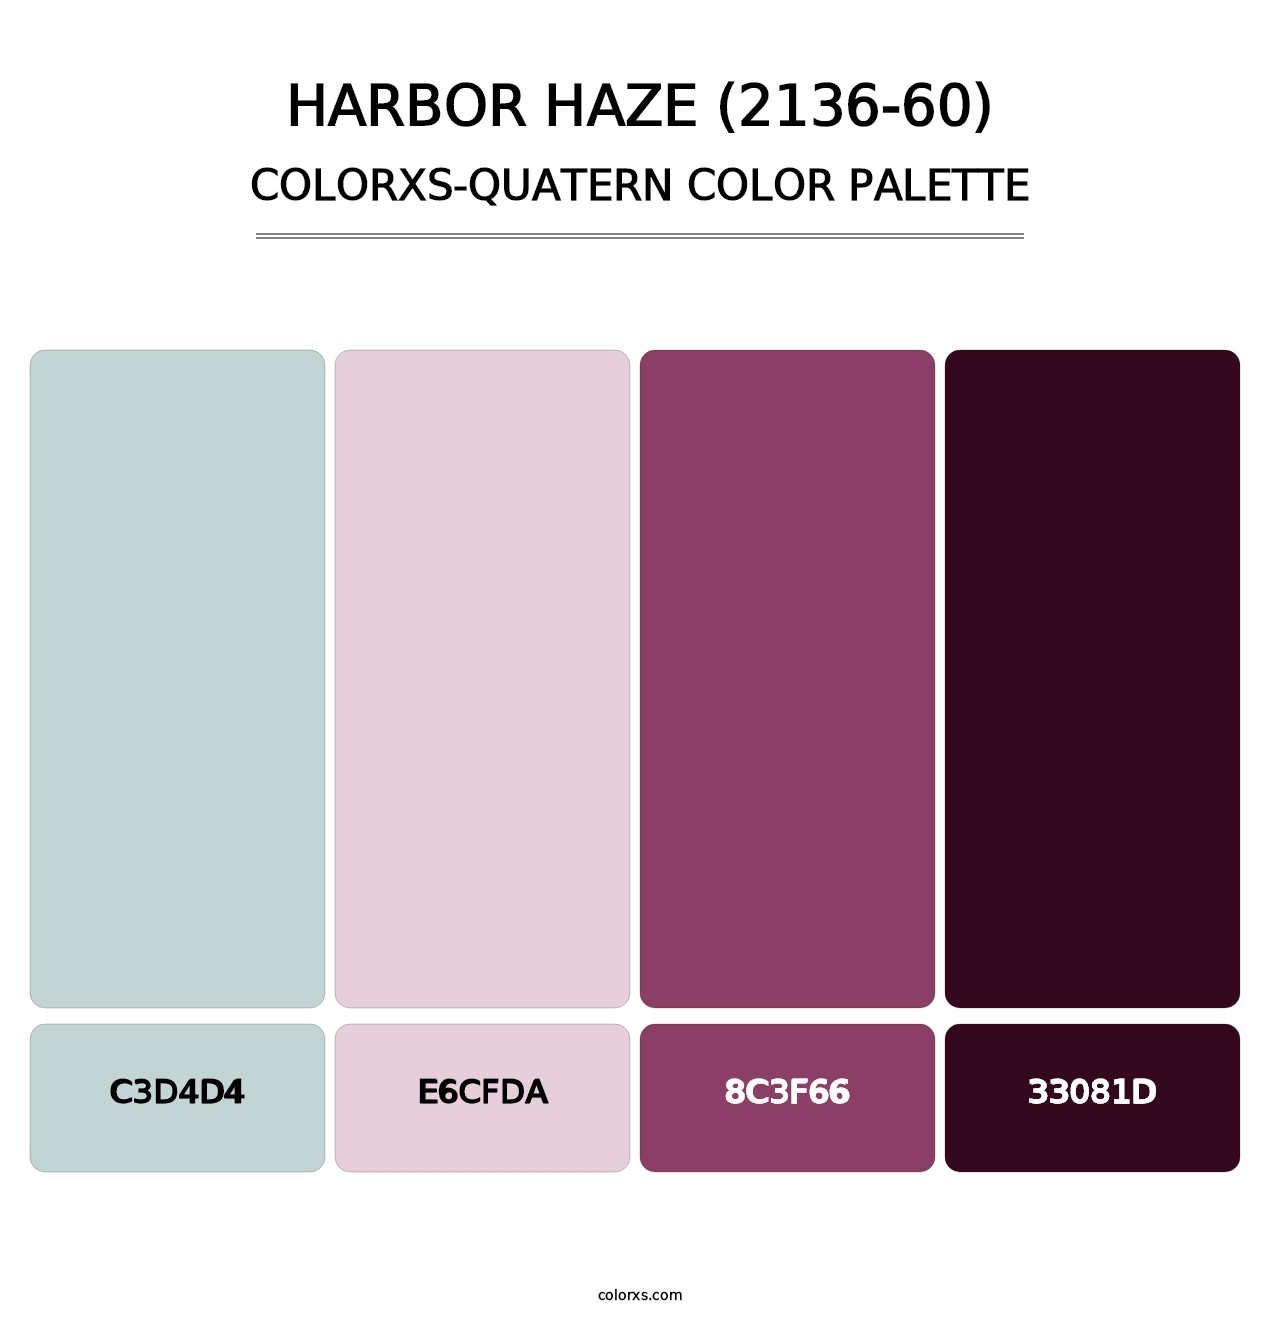 Harbor Haze (2136-60) - Colorxs Quatern Palette